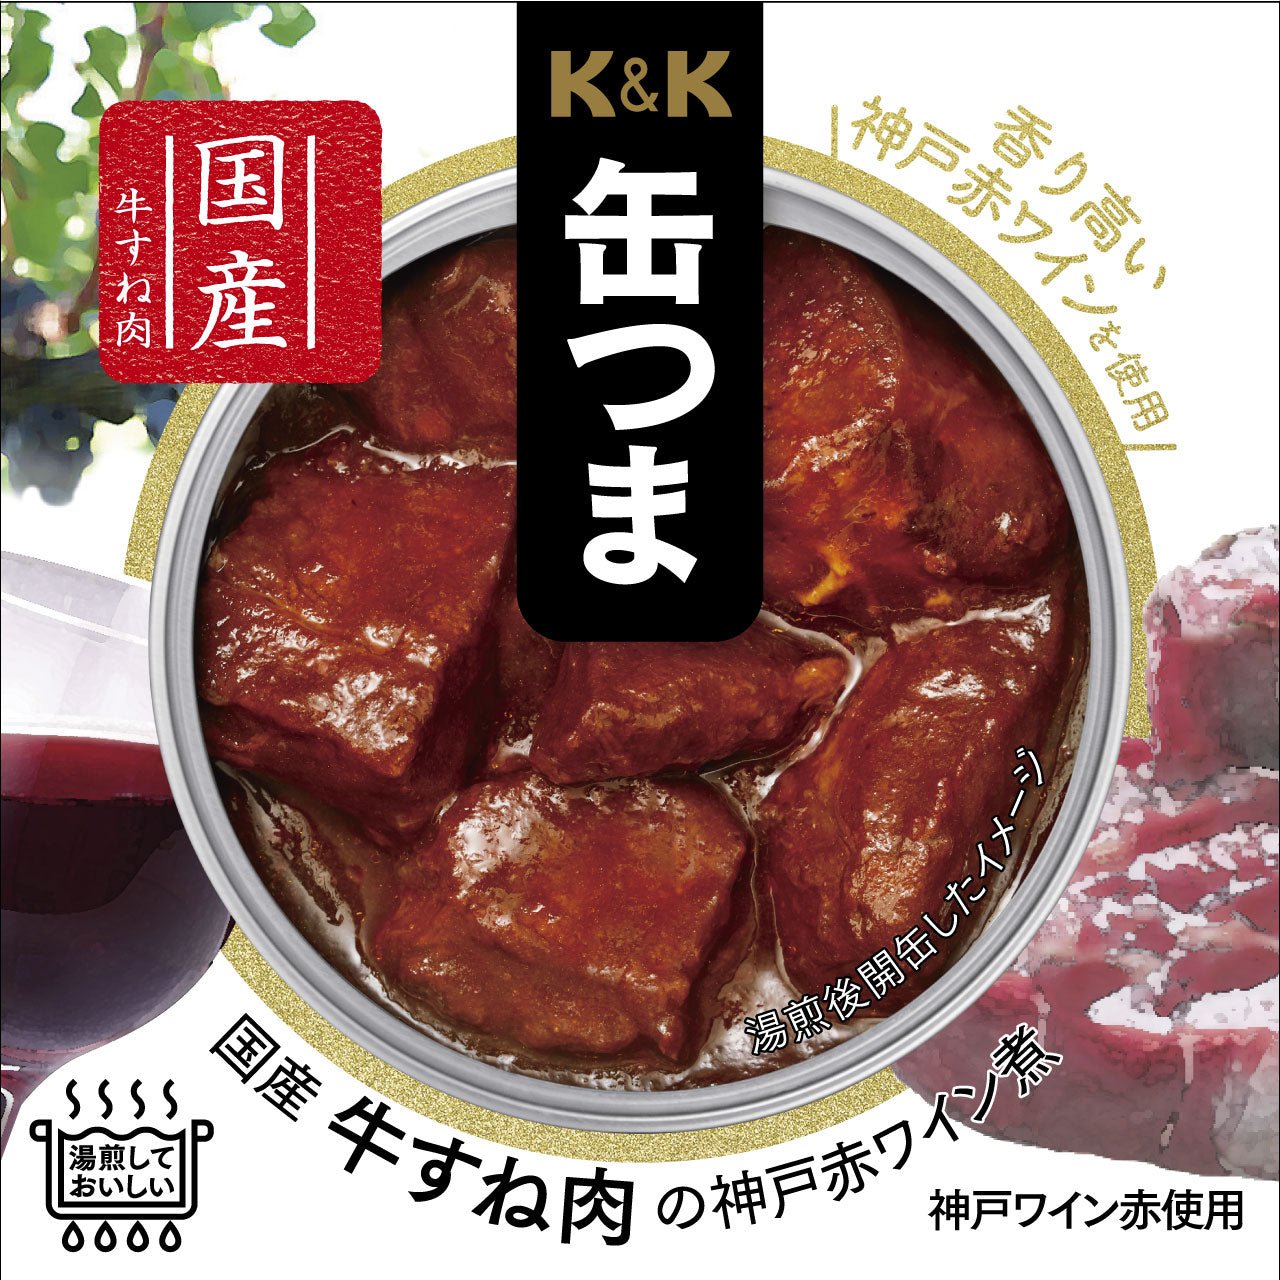 K & K CAN KOIZUMA 국내 쇠고기 태양 고기 고베 레드 와인 삶은